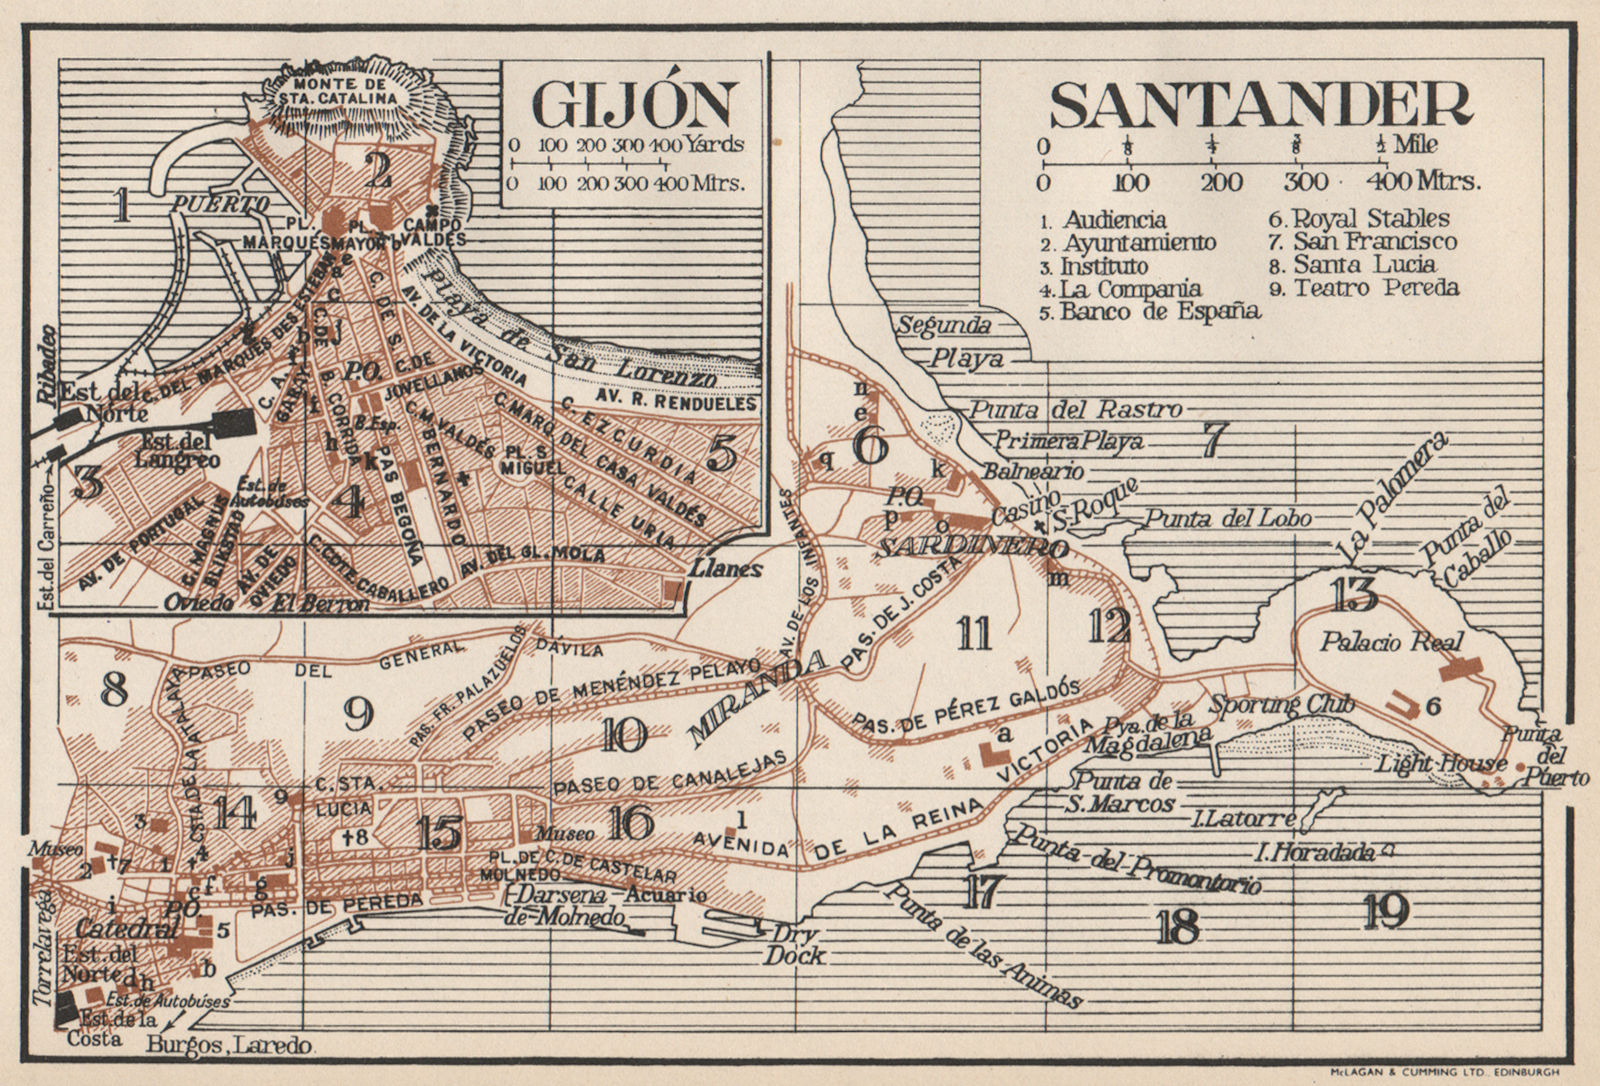 SANTANDER GIJON. Vintage town city map plan. Spain. Gijón 1958 old vintage